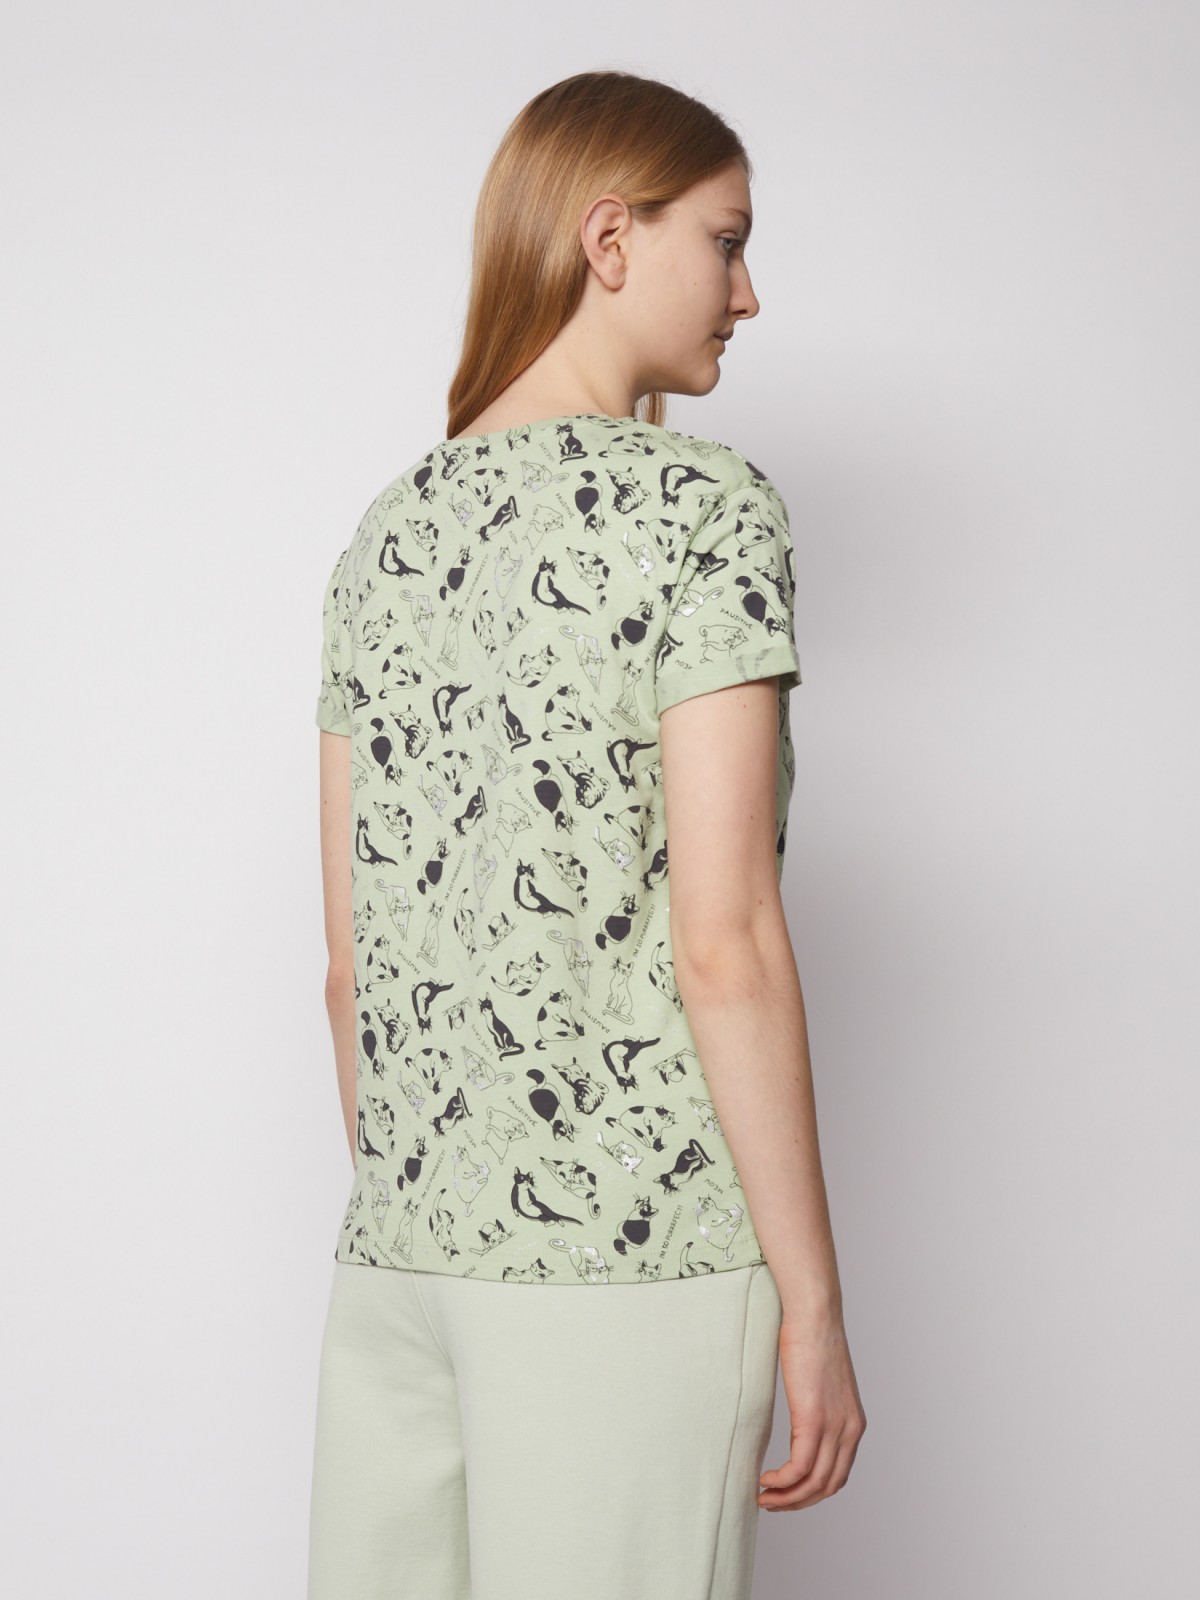 Принтованная футболка с коротким рукавом zolla 022133273132, цвет светло-зеленый, размер XS - фото 6